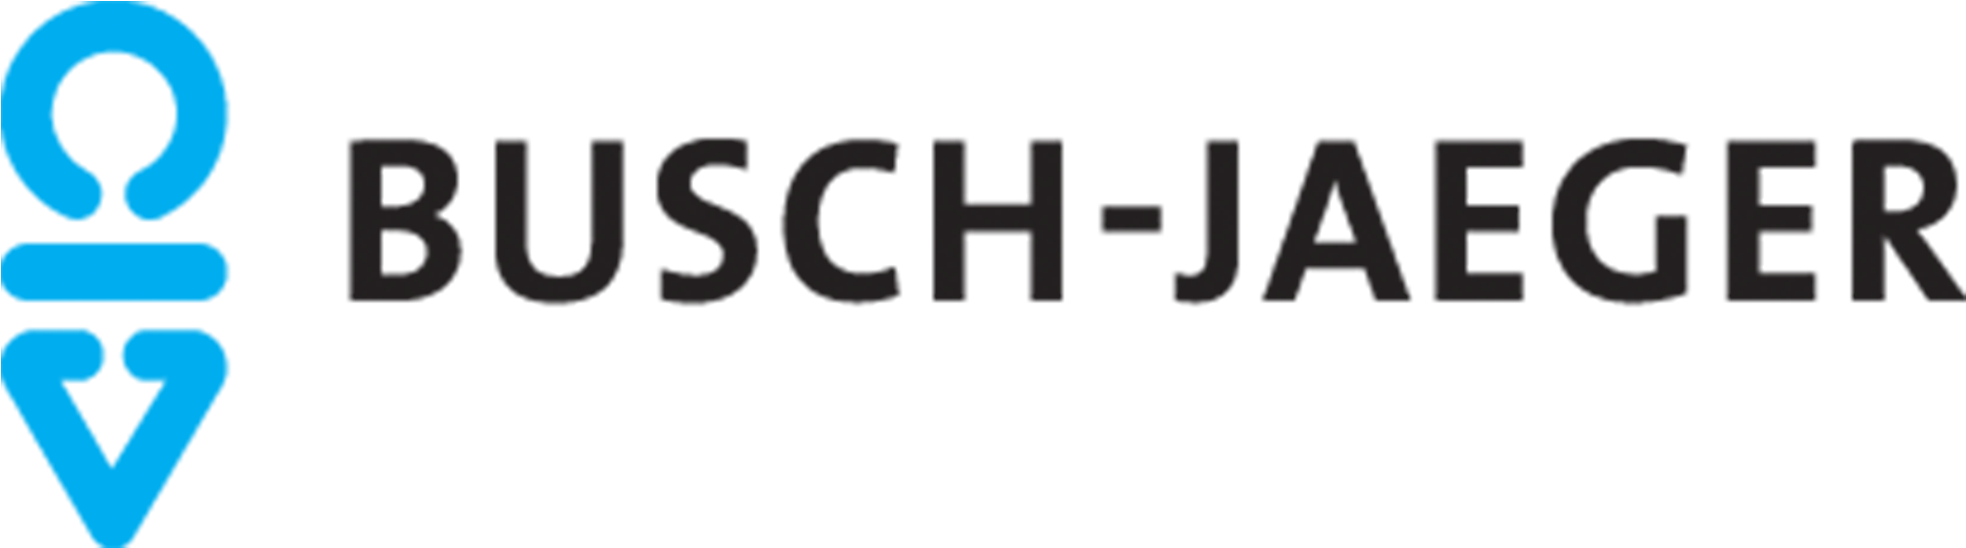 Busch Jaeger - Busch Jaeger Logo (2000x2000), Png Download